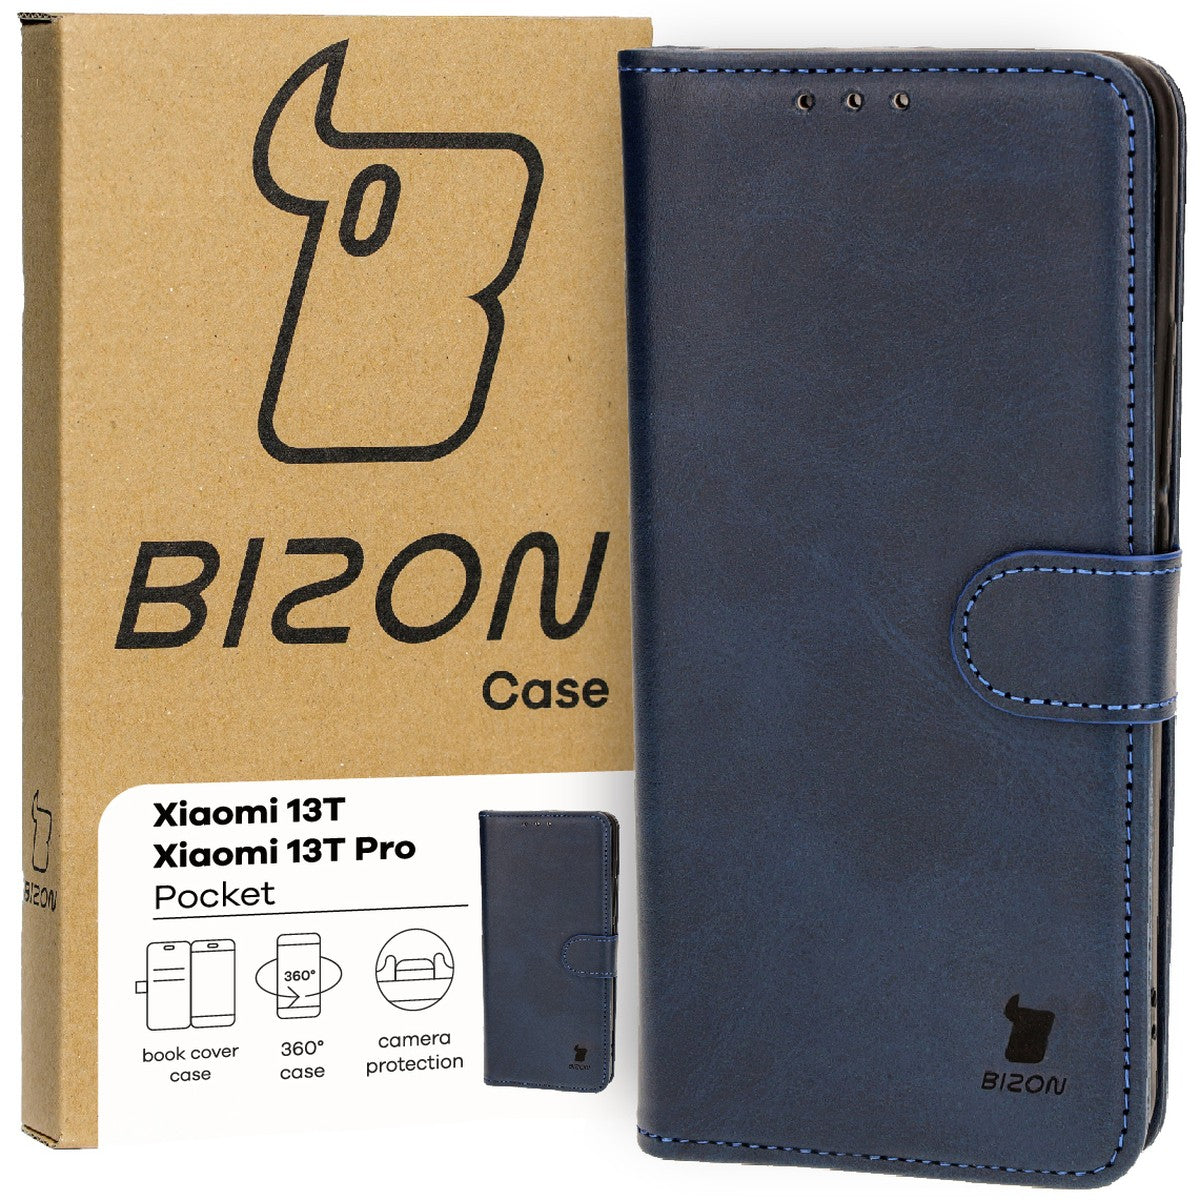 Schutzhülle für Xiaomi 13T / 13T Pro, Bizon Case Pocket, Dunkelblau